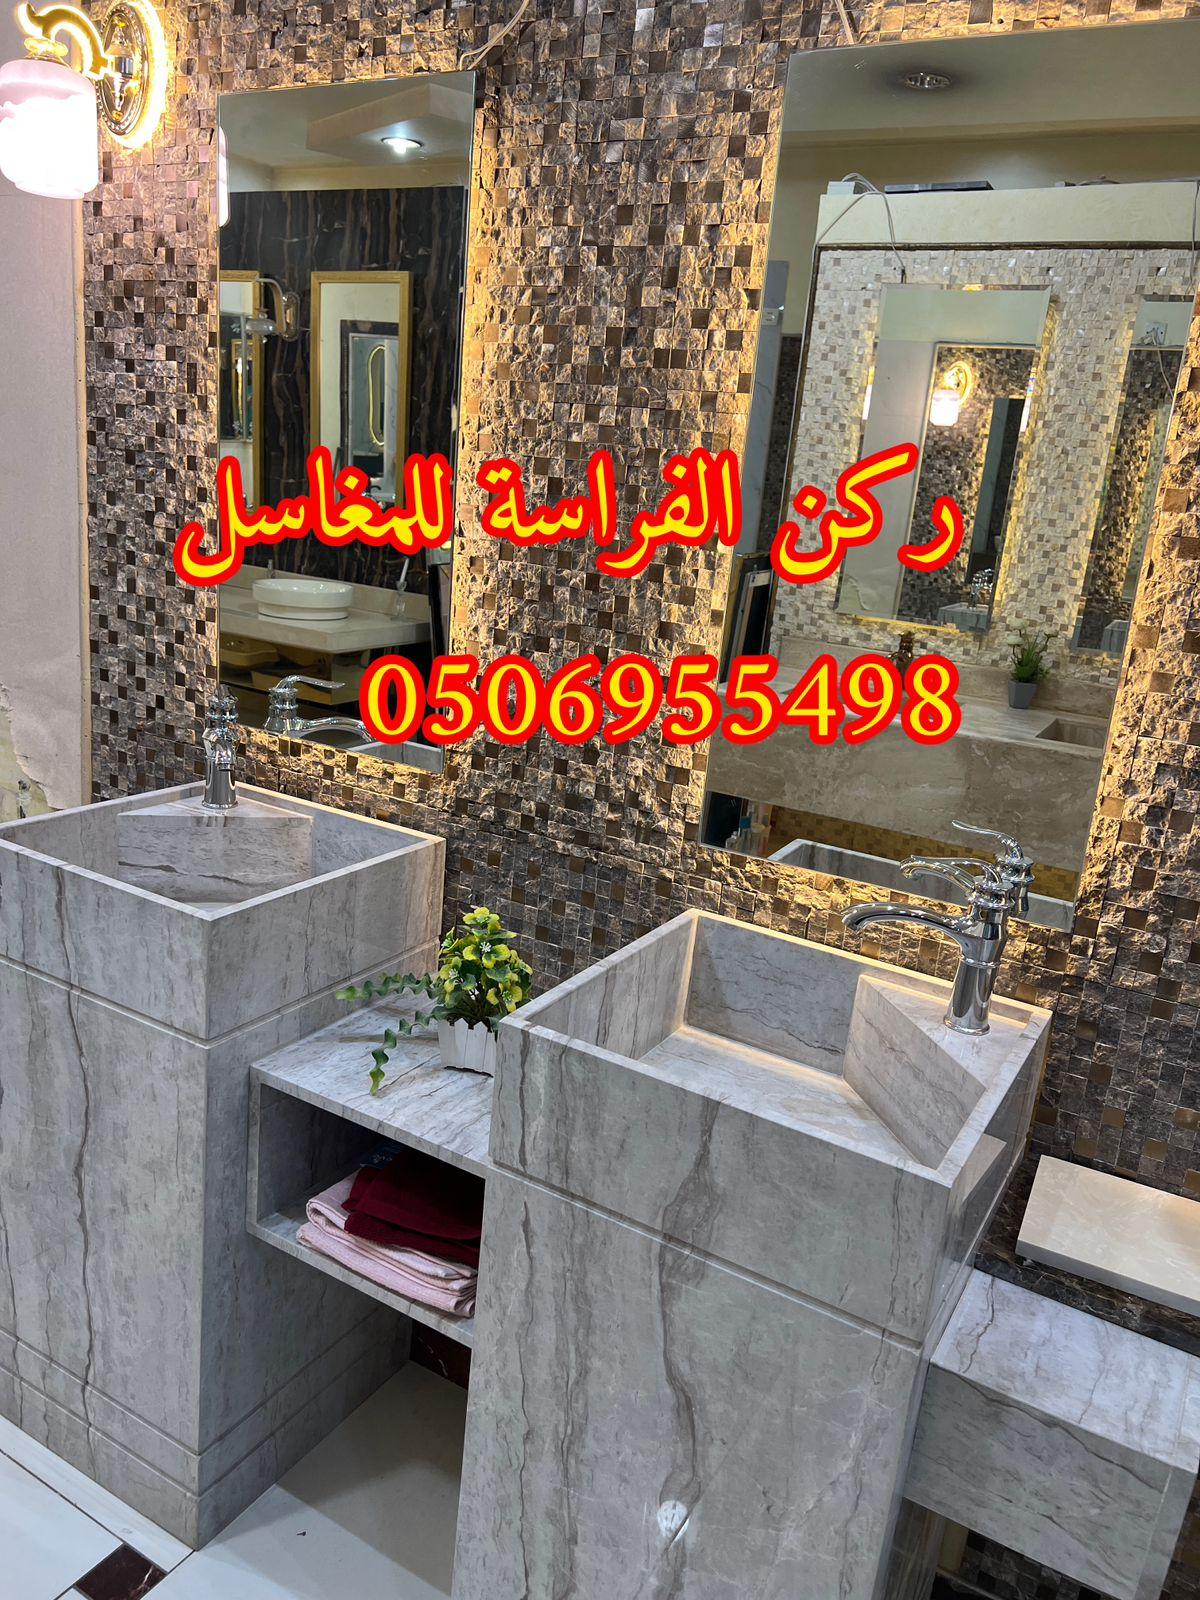 ديكورات مغاسل حمامات رخام في الرياض,0506955498 799850547